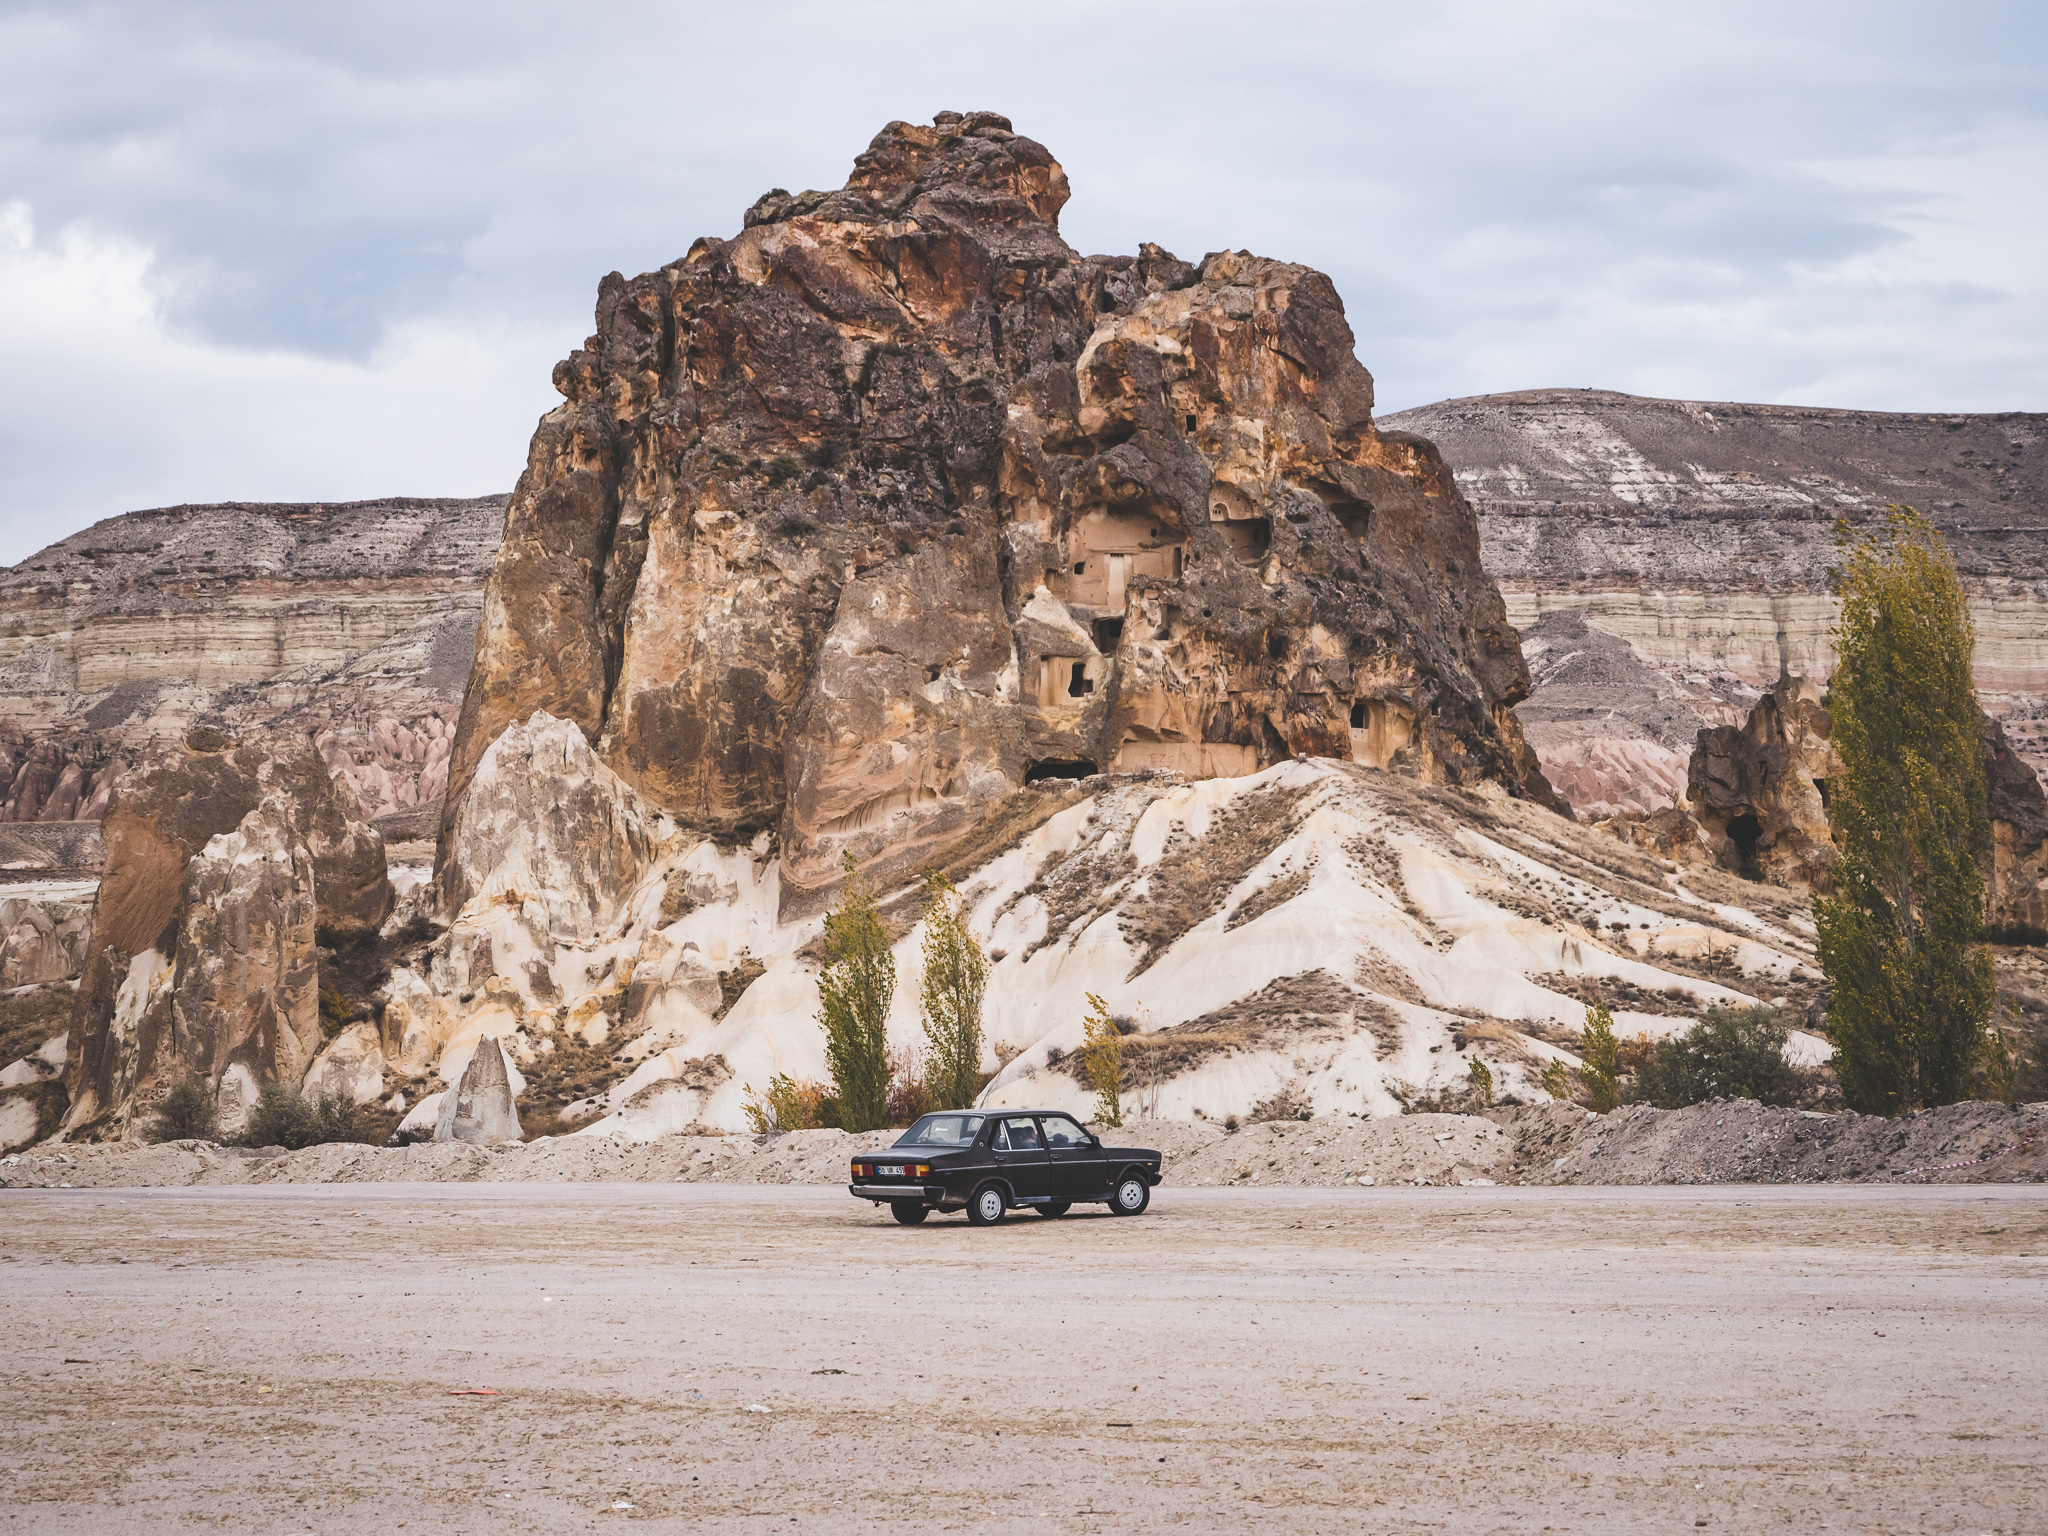 paysage typique quand on visite la cappadoce : une vieille voiture de collection devant un paysage troglodyte